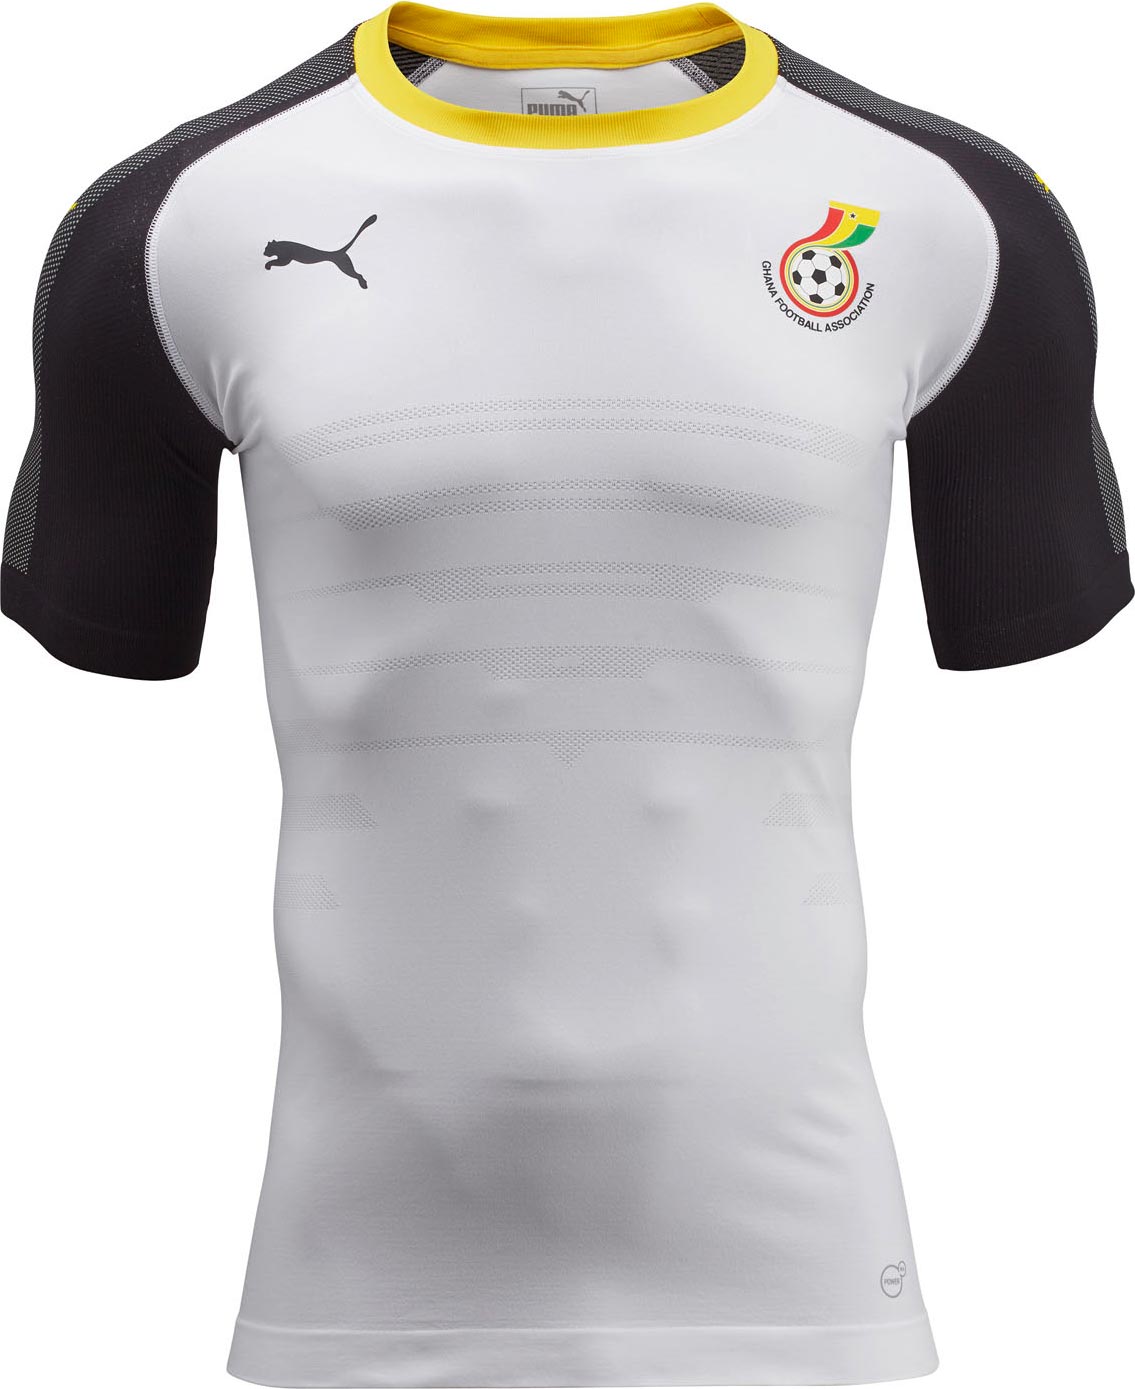 ghana-2016-home-kit-shirt